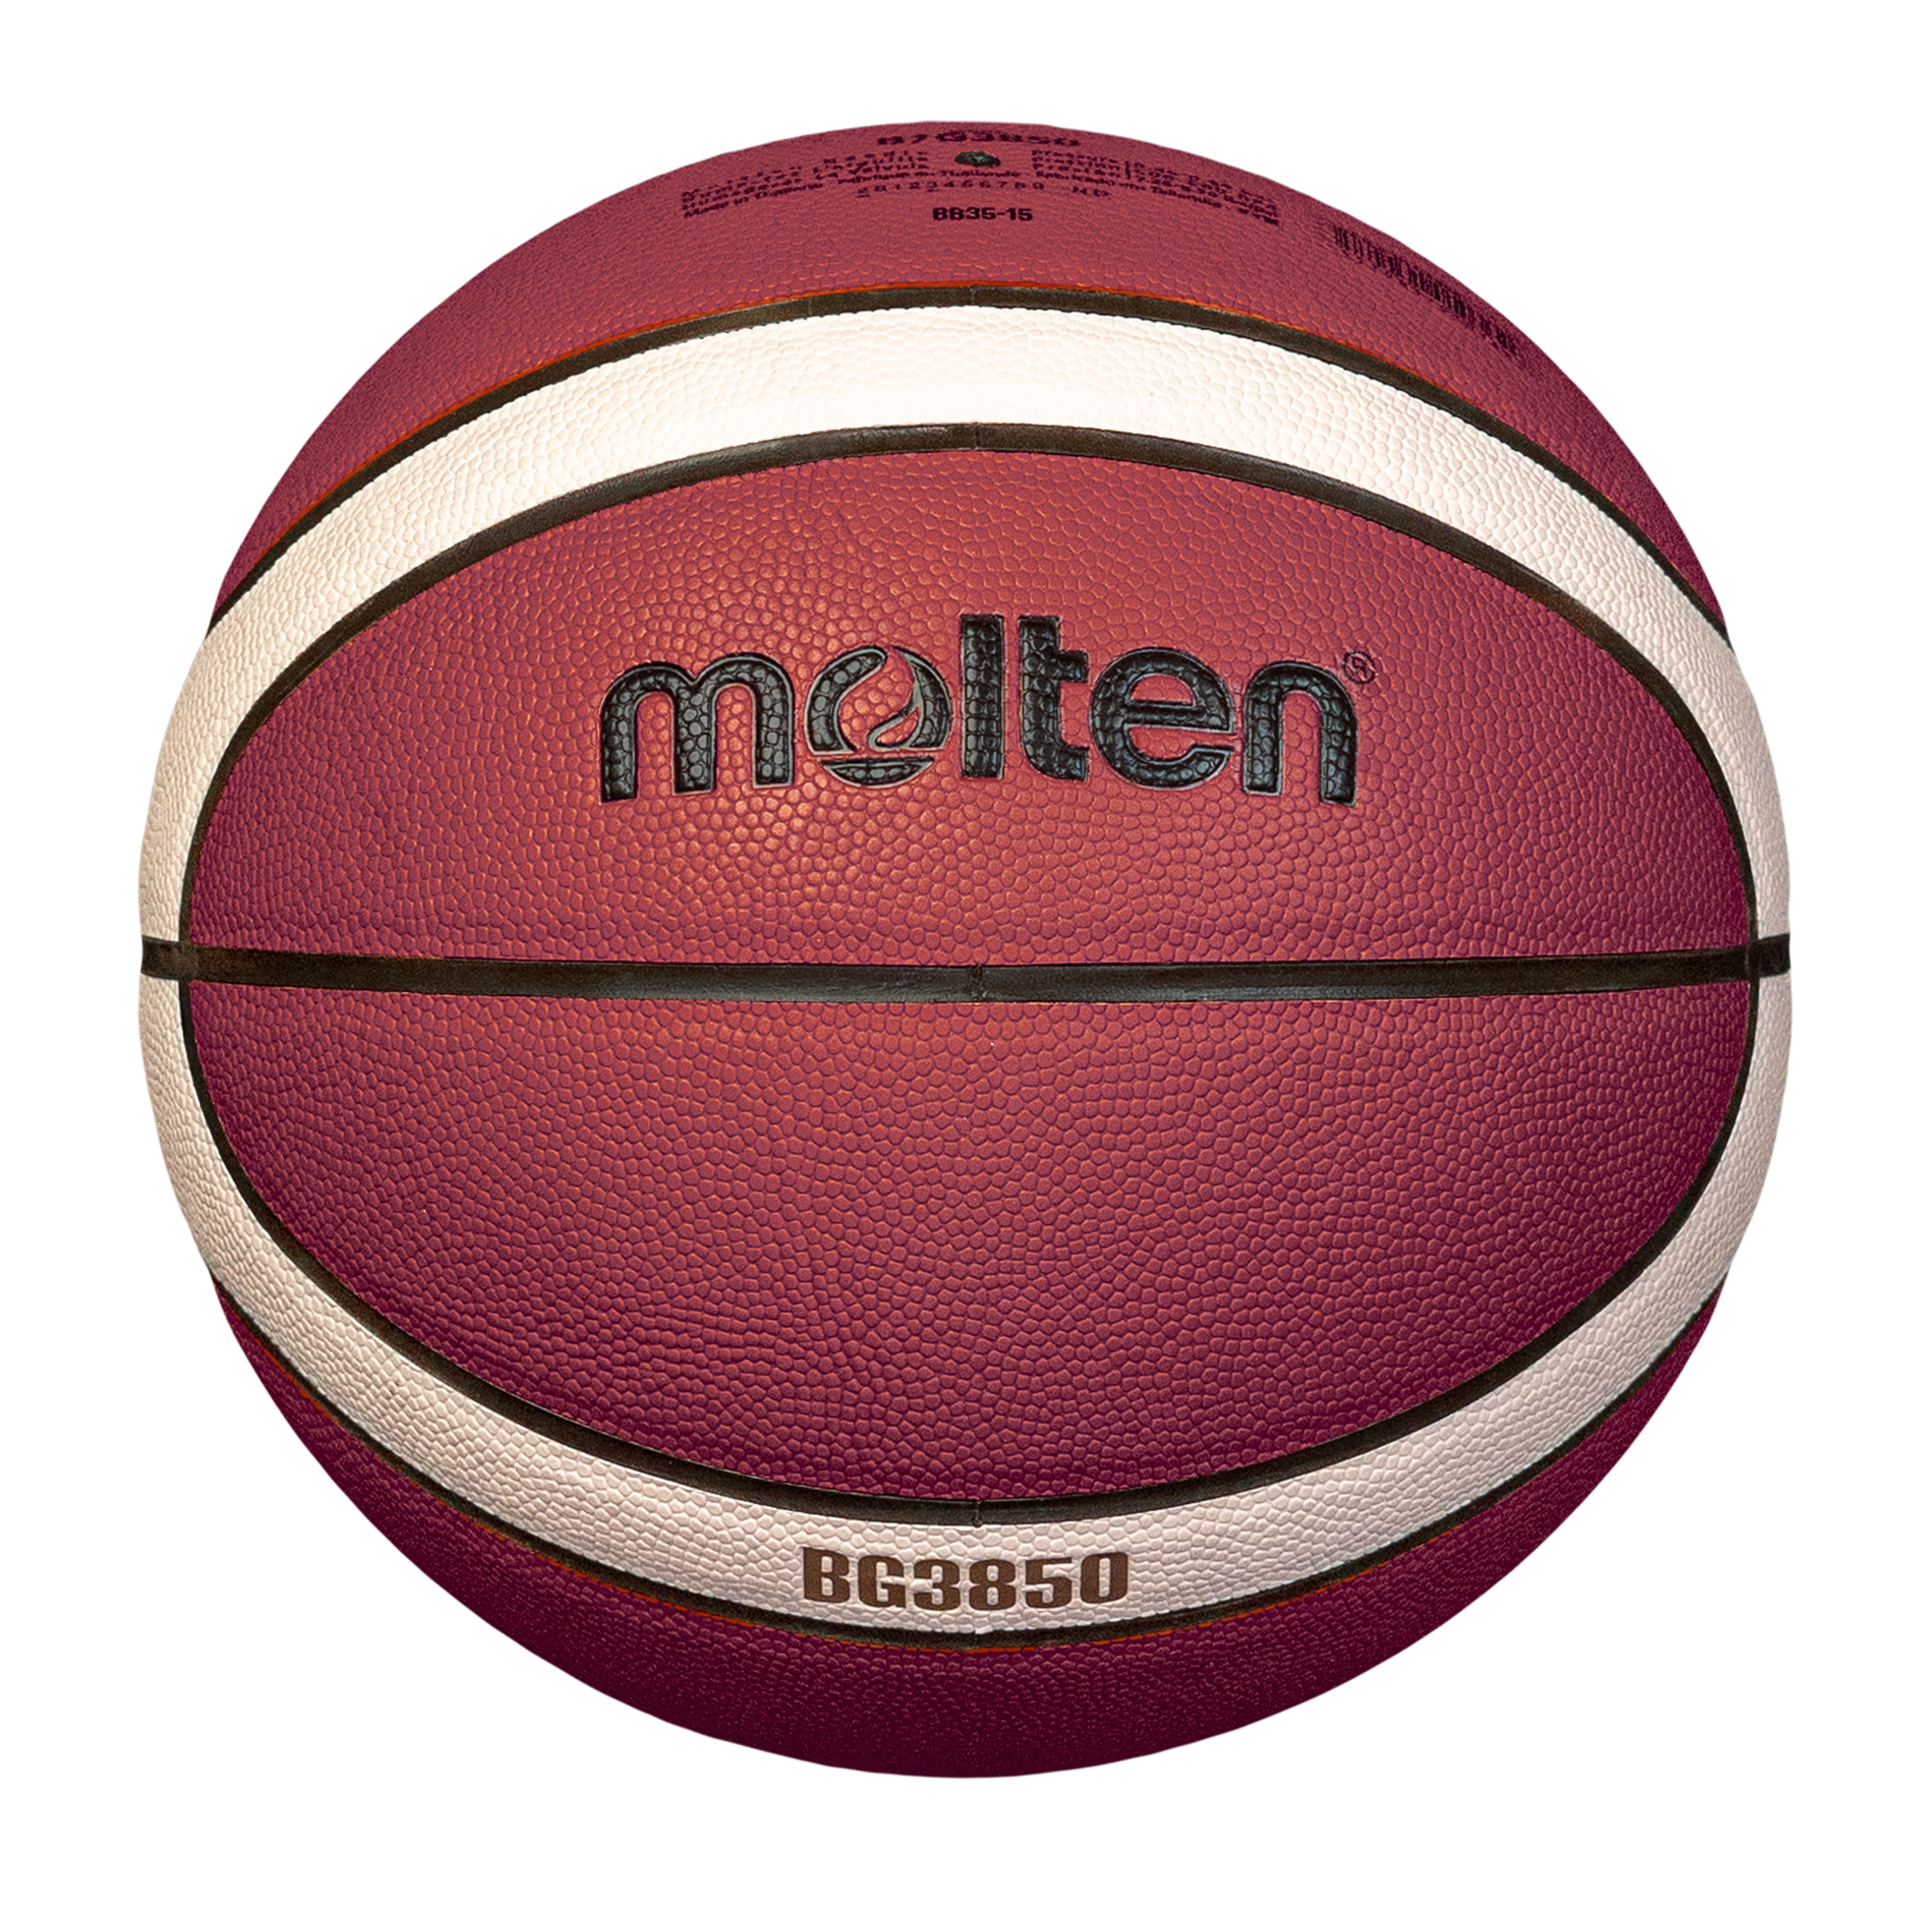 molten-basketball-B5G3850-S1_1.png